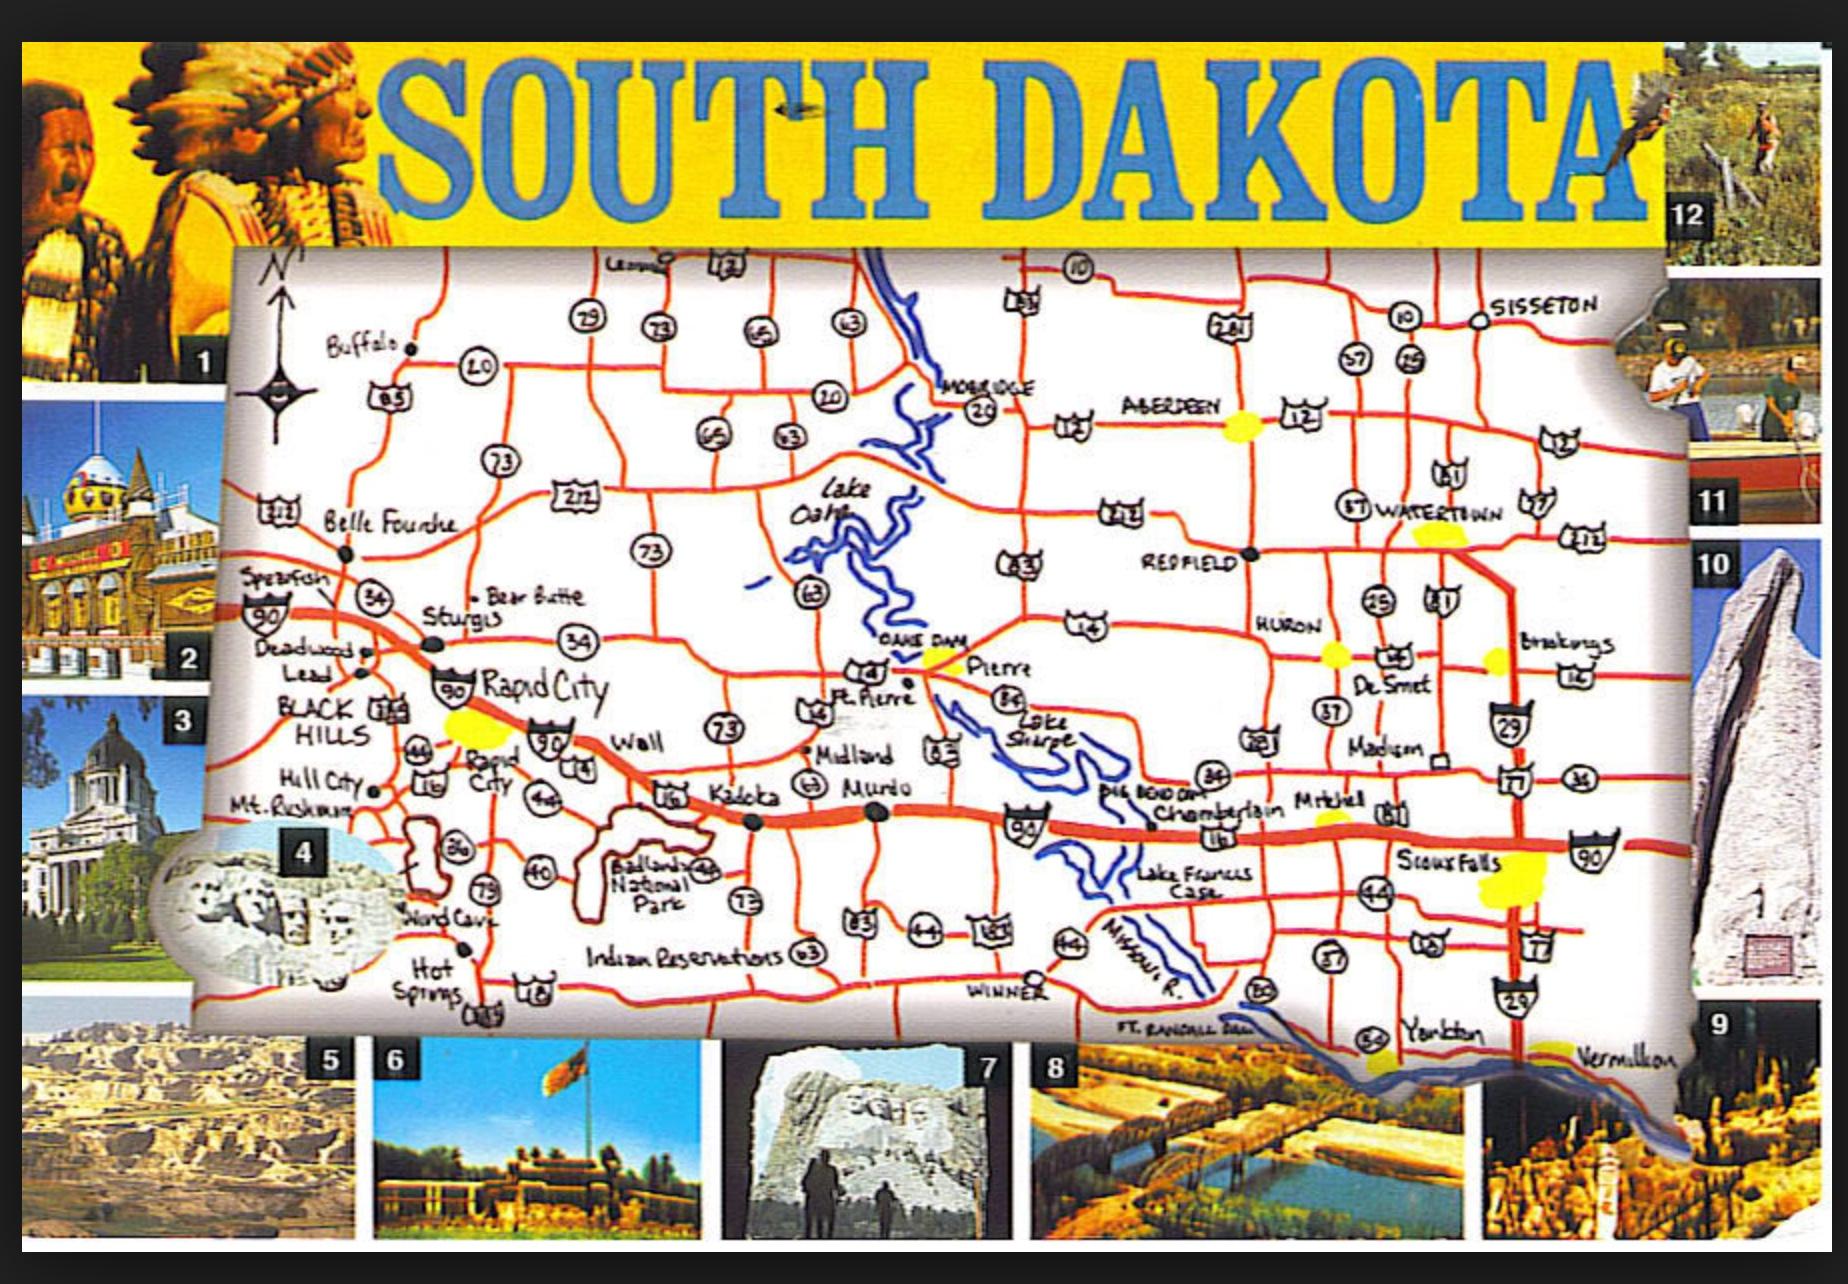 south dakota tourism website